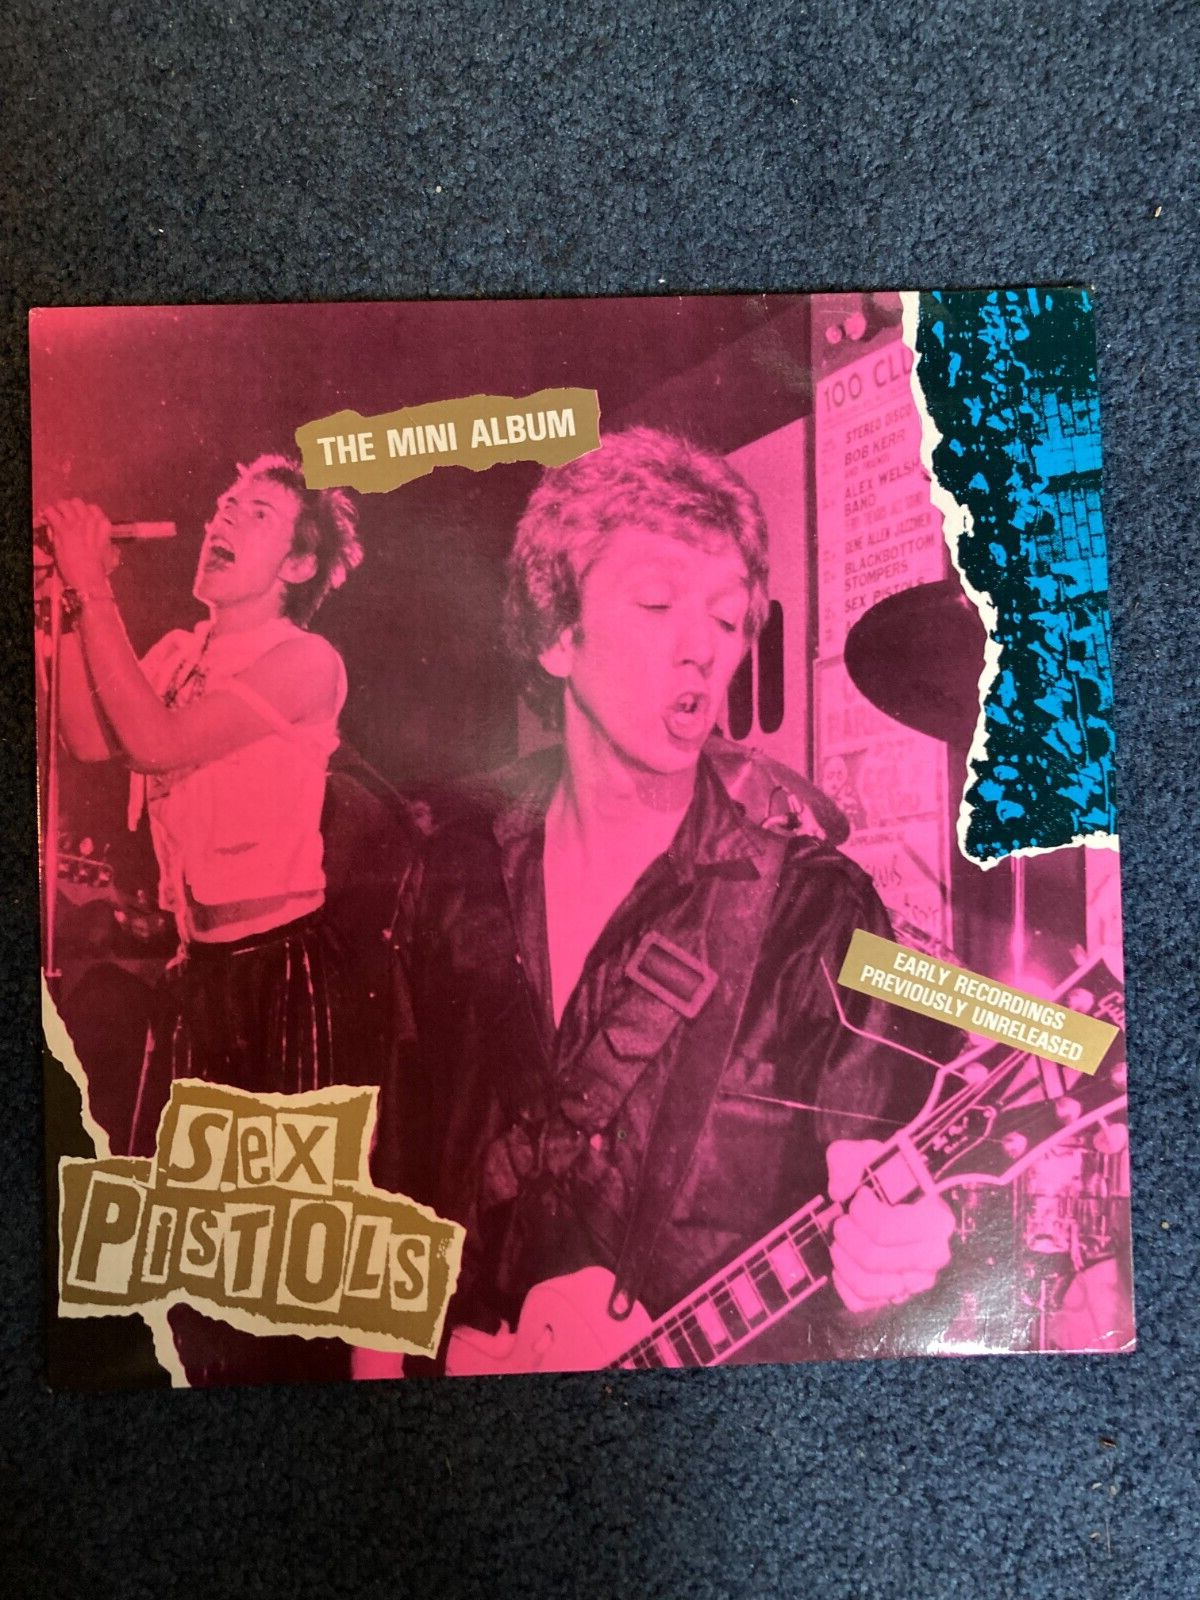 Sex Pistols - The Mini Album Vinyl LP (1985) UK PRESS  EX/VG+